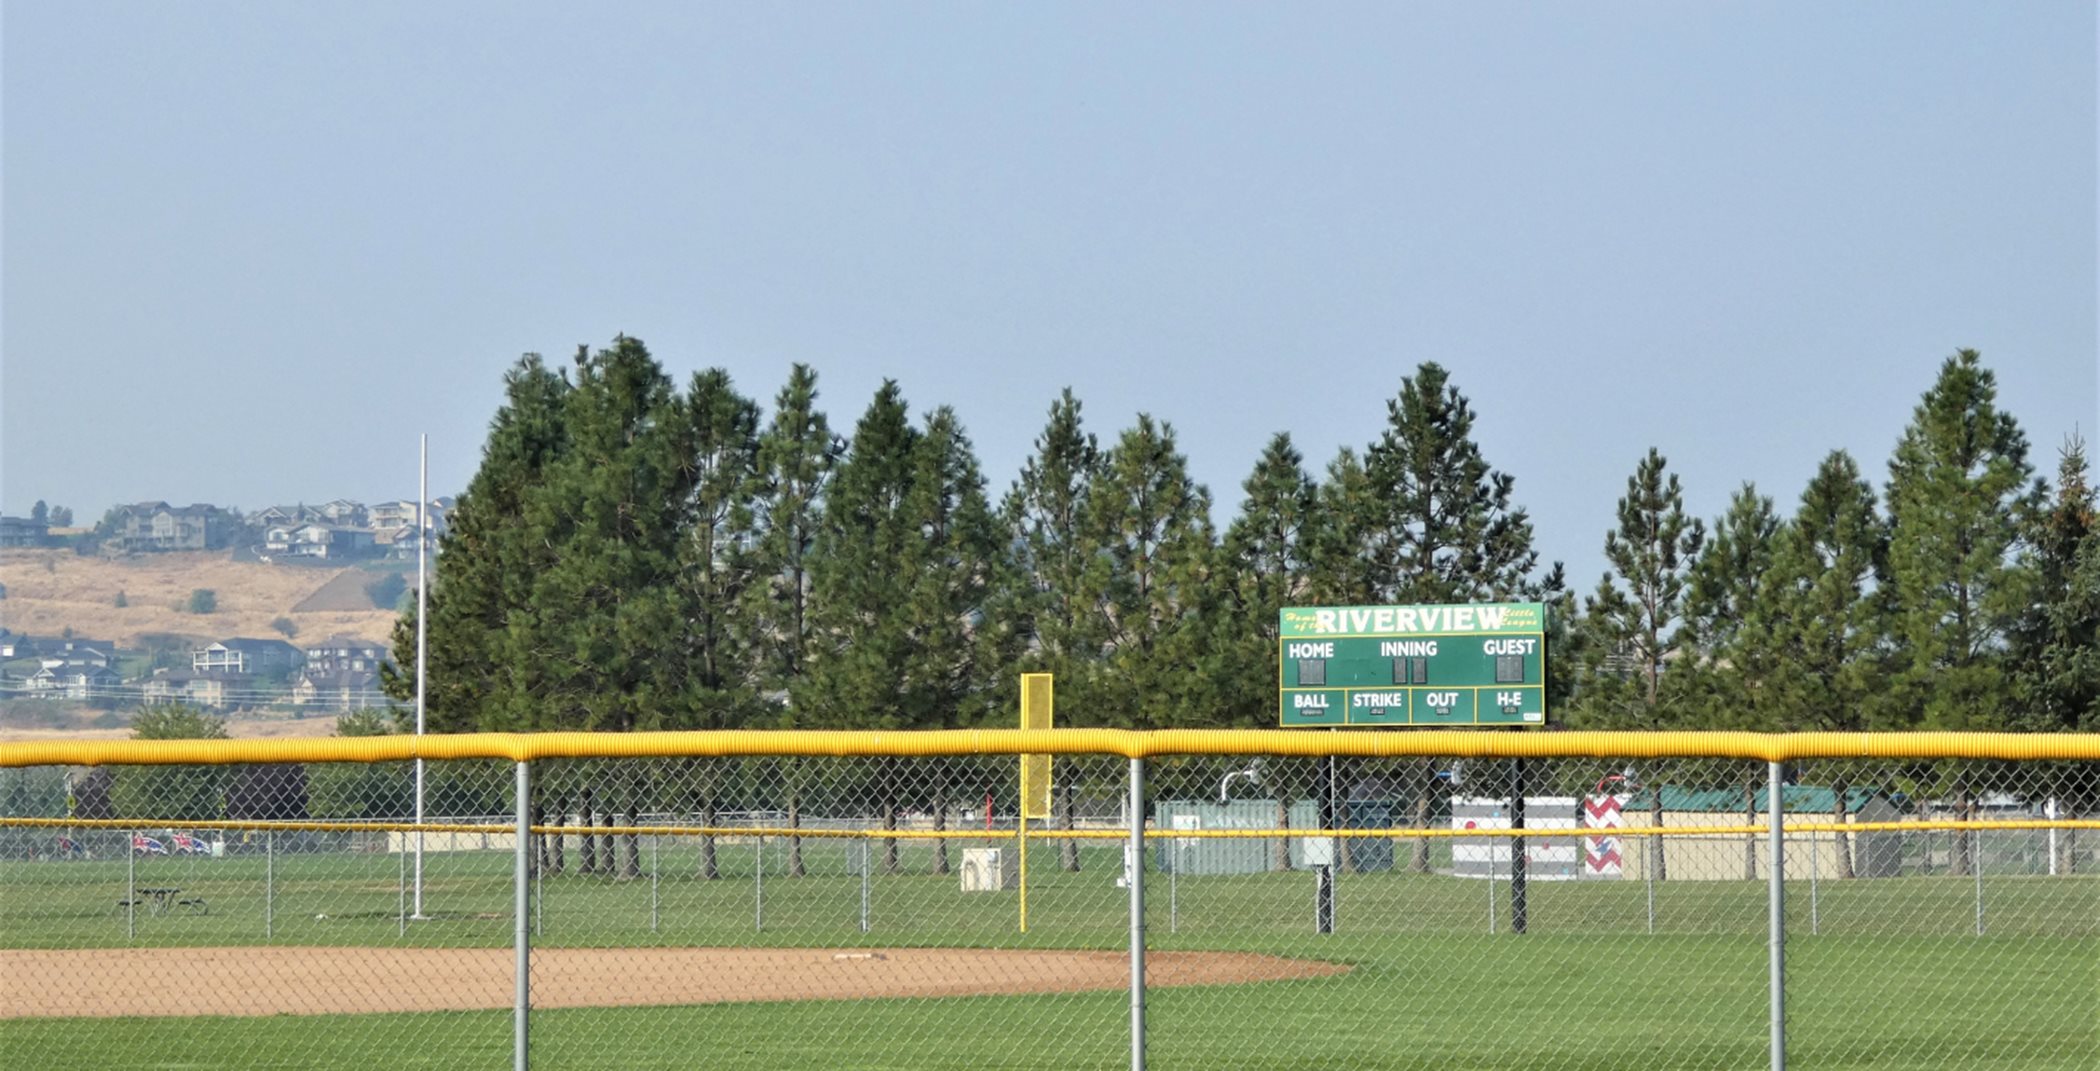 Little league baseball field in daylight